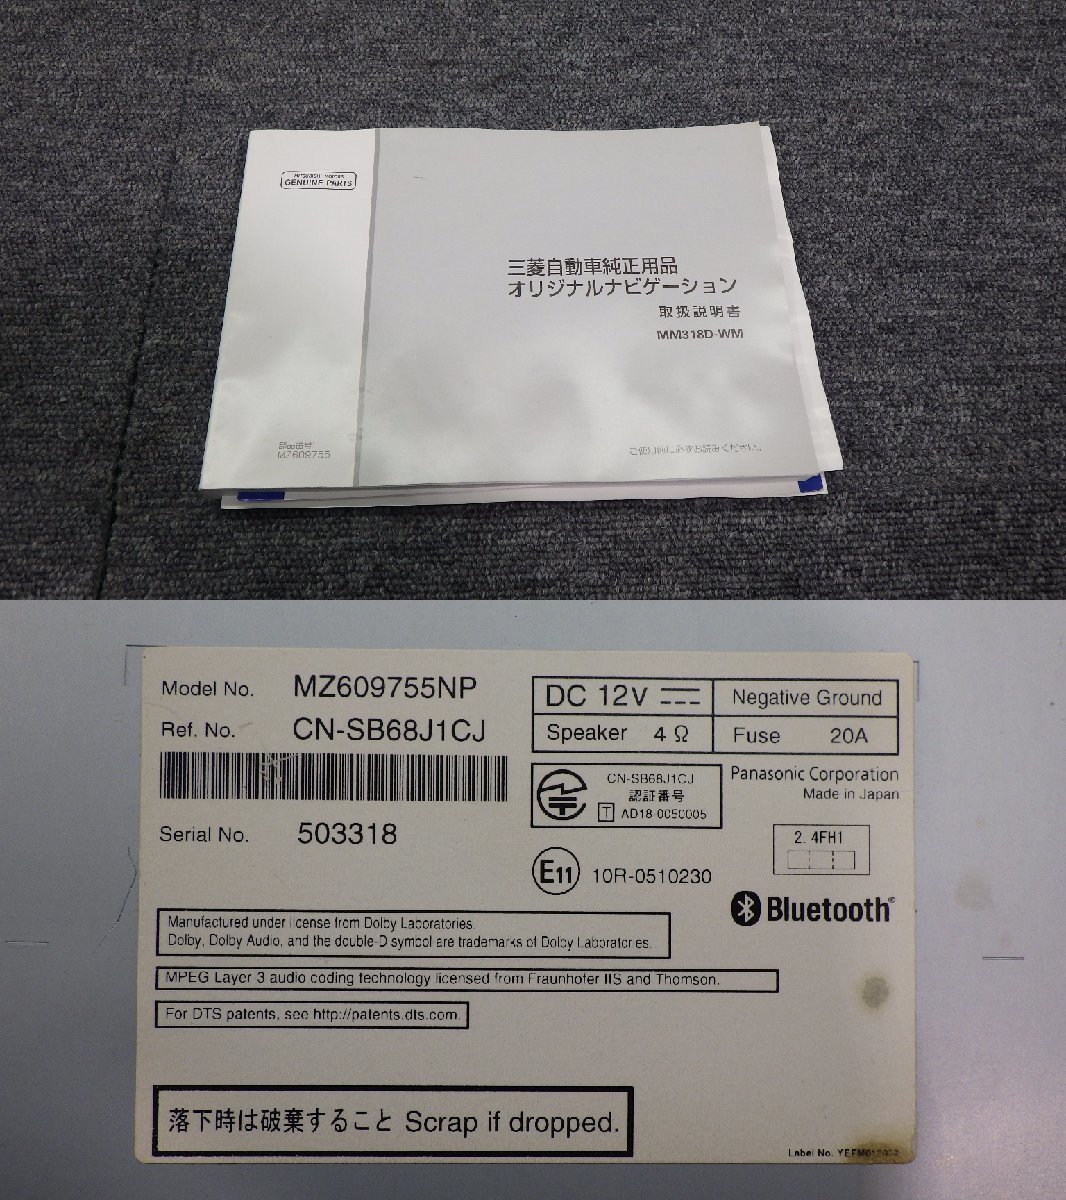 110 Mitsubishi оригинальный Memory Navi Panasonic MM318D-WM CN-SB68J1CJ Full seg CD DVD FM AM Bluetooth карта данные 2018 год Mike есть с руководством пользователя 